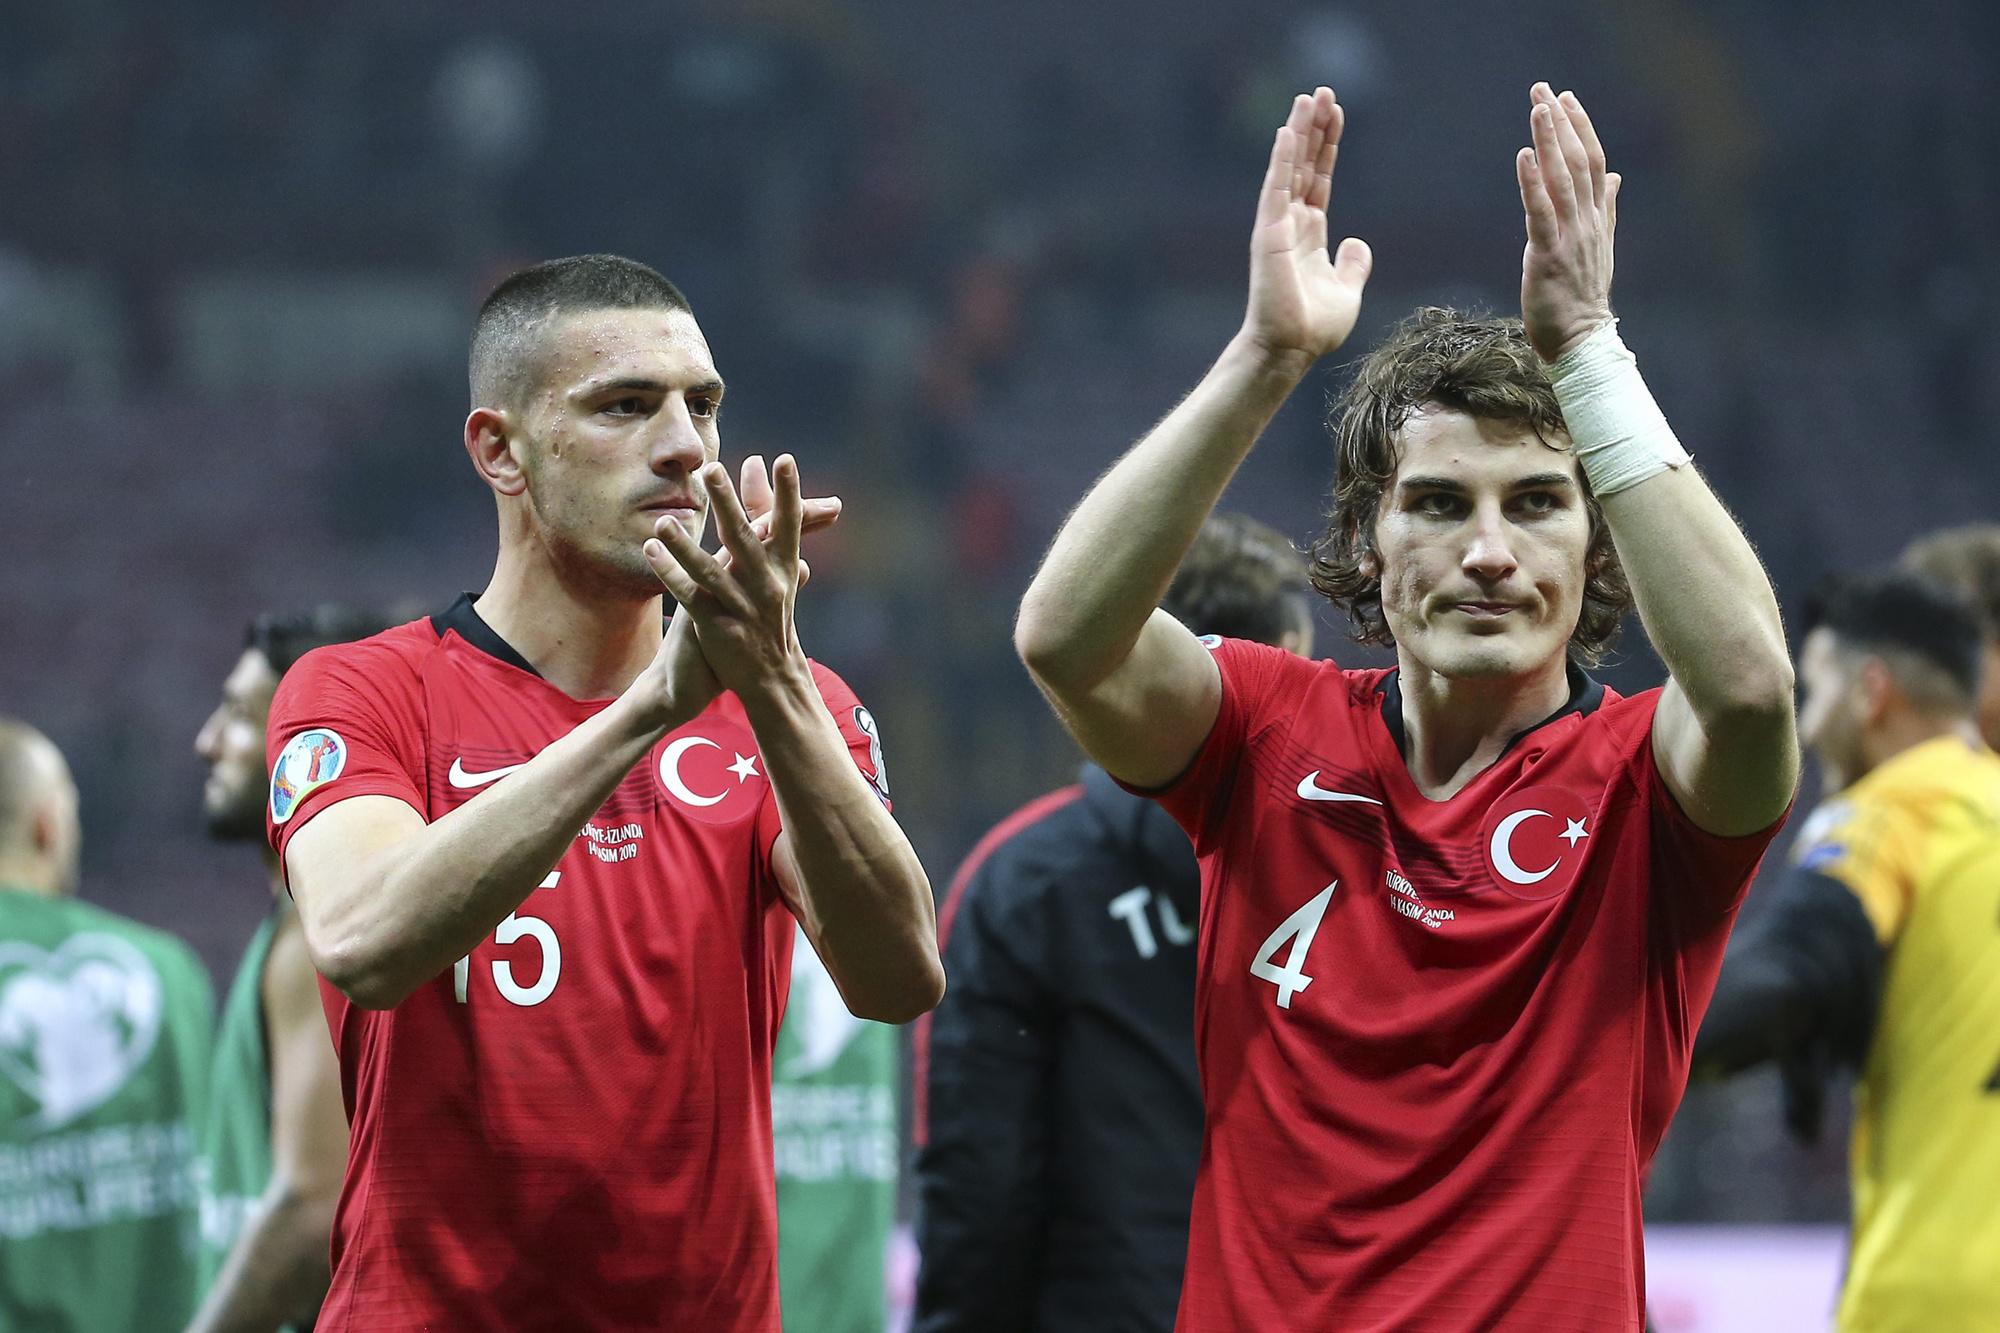 'Söyüncü (r) en Demiral (l) kunnen een van de beste verdedigende duo's ter wereld worden.'